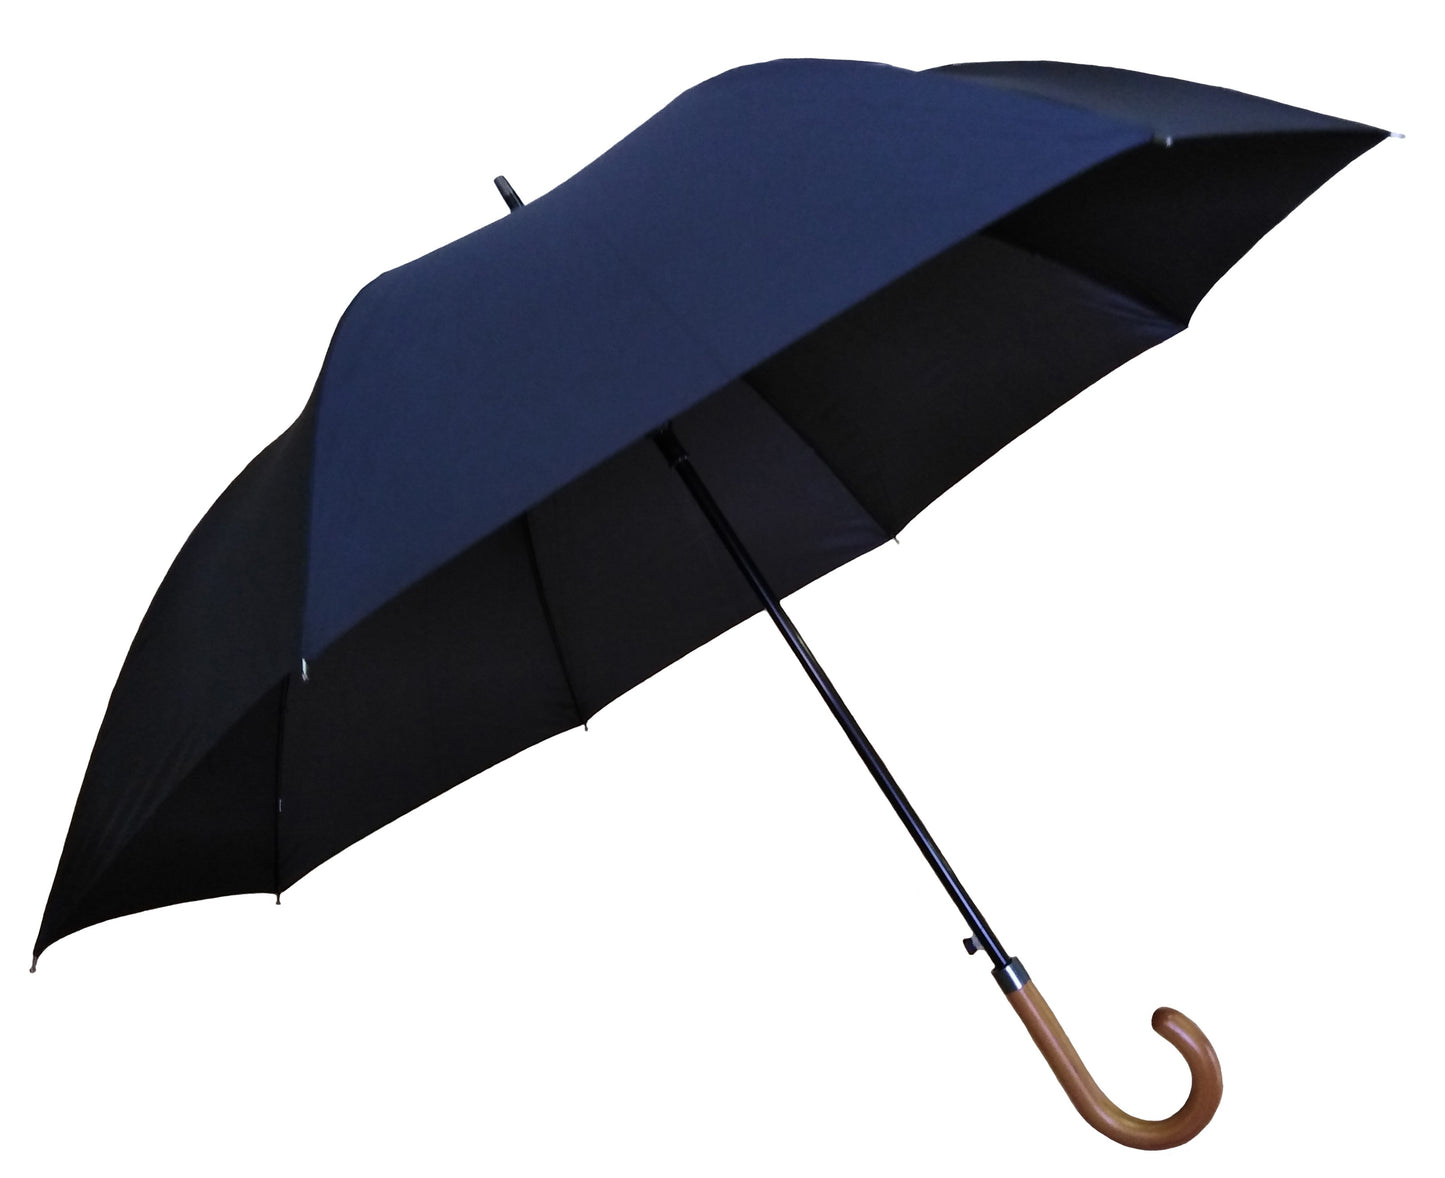 Μπλε μαρίν ομπρέλα βροχής, συνοδείας, αυτόματη.